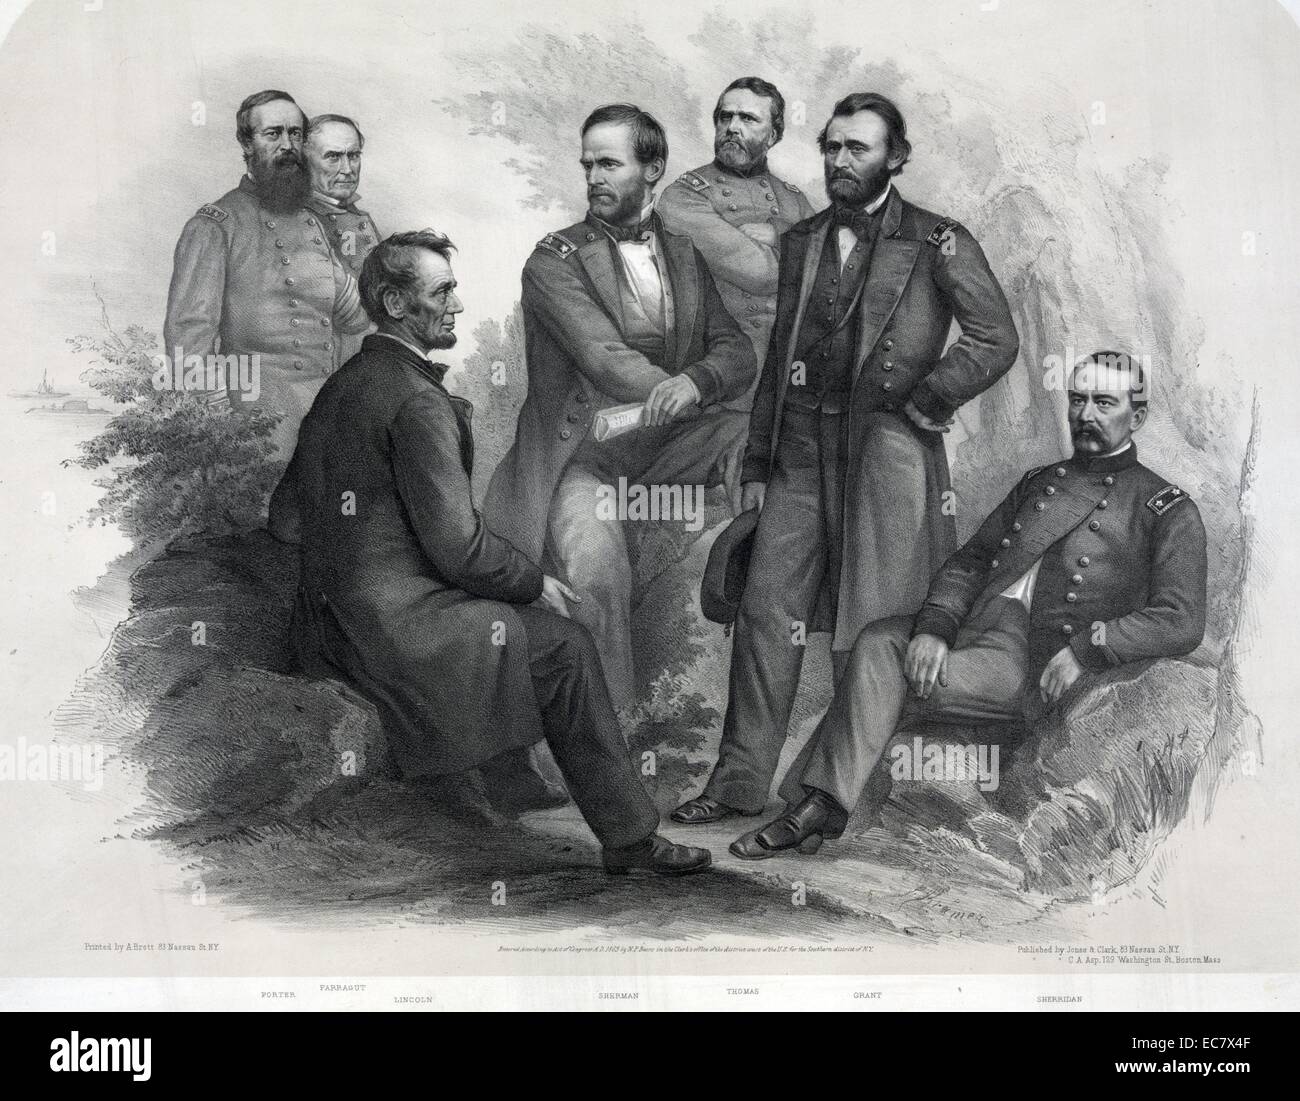 Präsident Abraham Lincoln auf einem Stein saß im Gespräch mit seinen Generälen: Porter, Admiral Farragut, Lincoln, Sherman, Thomas, Grant und Sheridan. Stockfoto